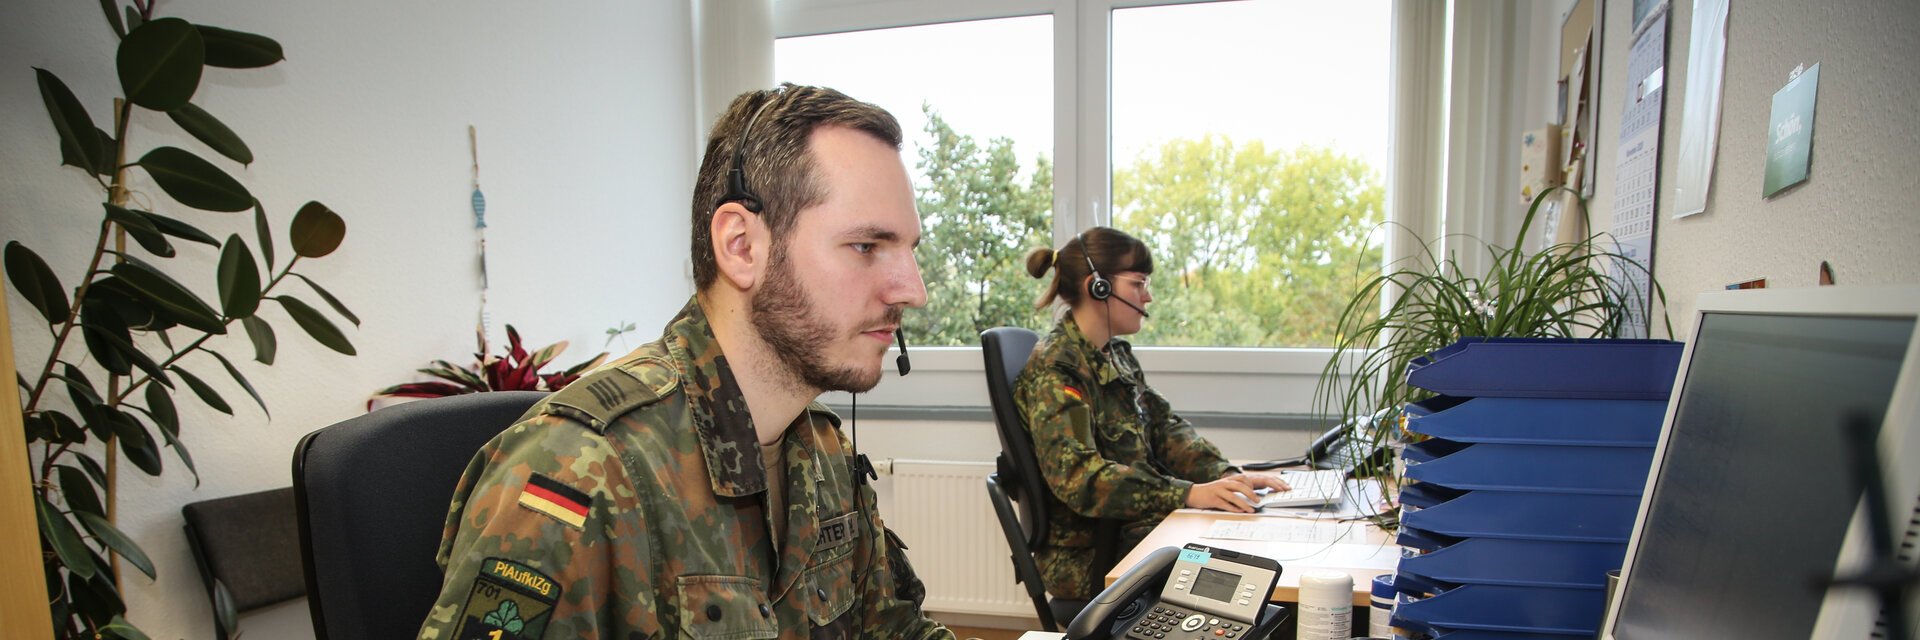 Ein Soldat sitzt mit seiner Kameradin am Schreibtisch und arbeitet am Computer.